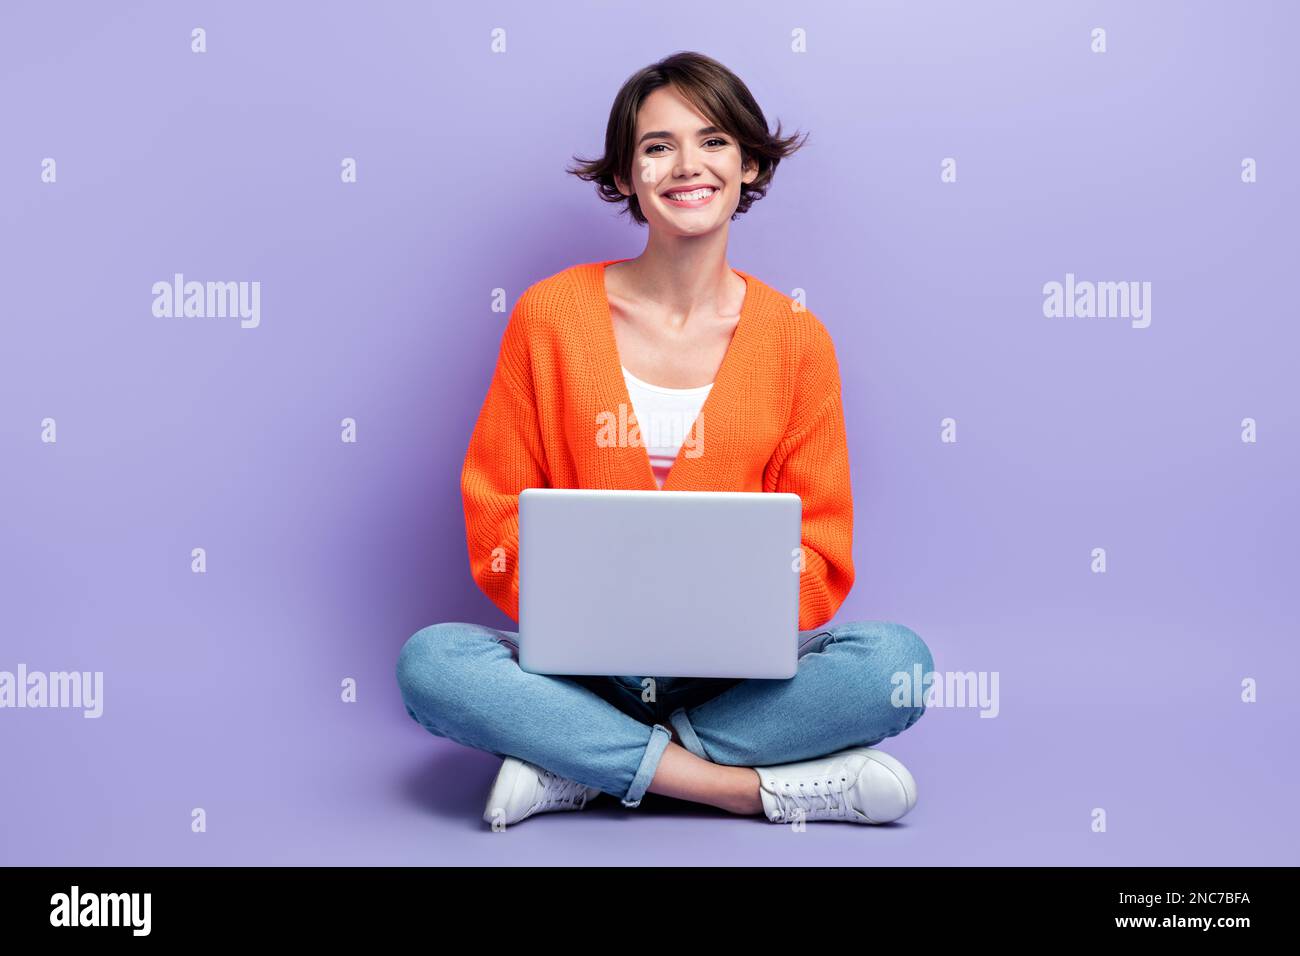 Foto in voller Länge von einer jungen, fröhlichen Designerfrau, die sitzt, verwenden einen persönlichen Laptop und genießen ihren Job isoliert auf violettem Hintergrund Stockfoto